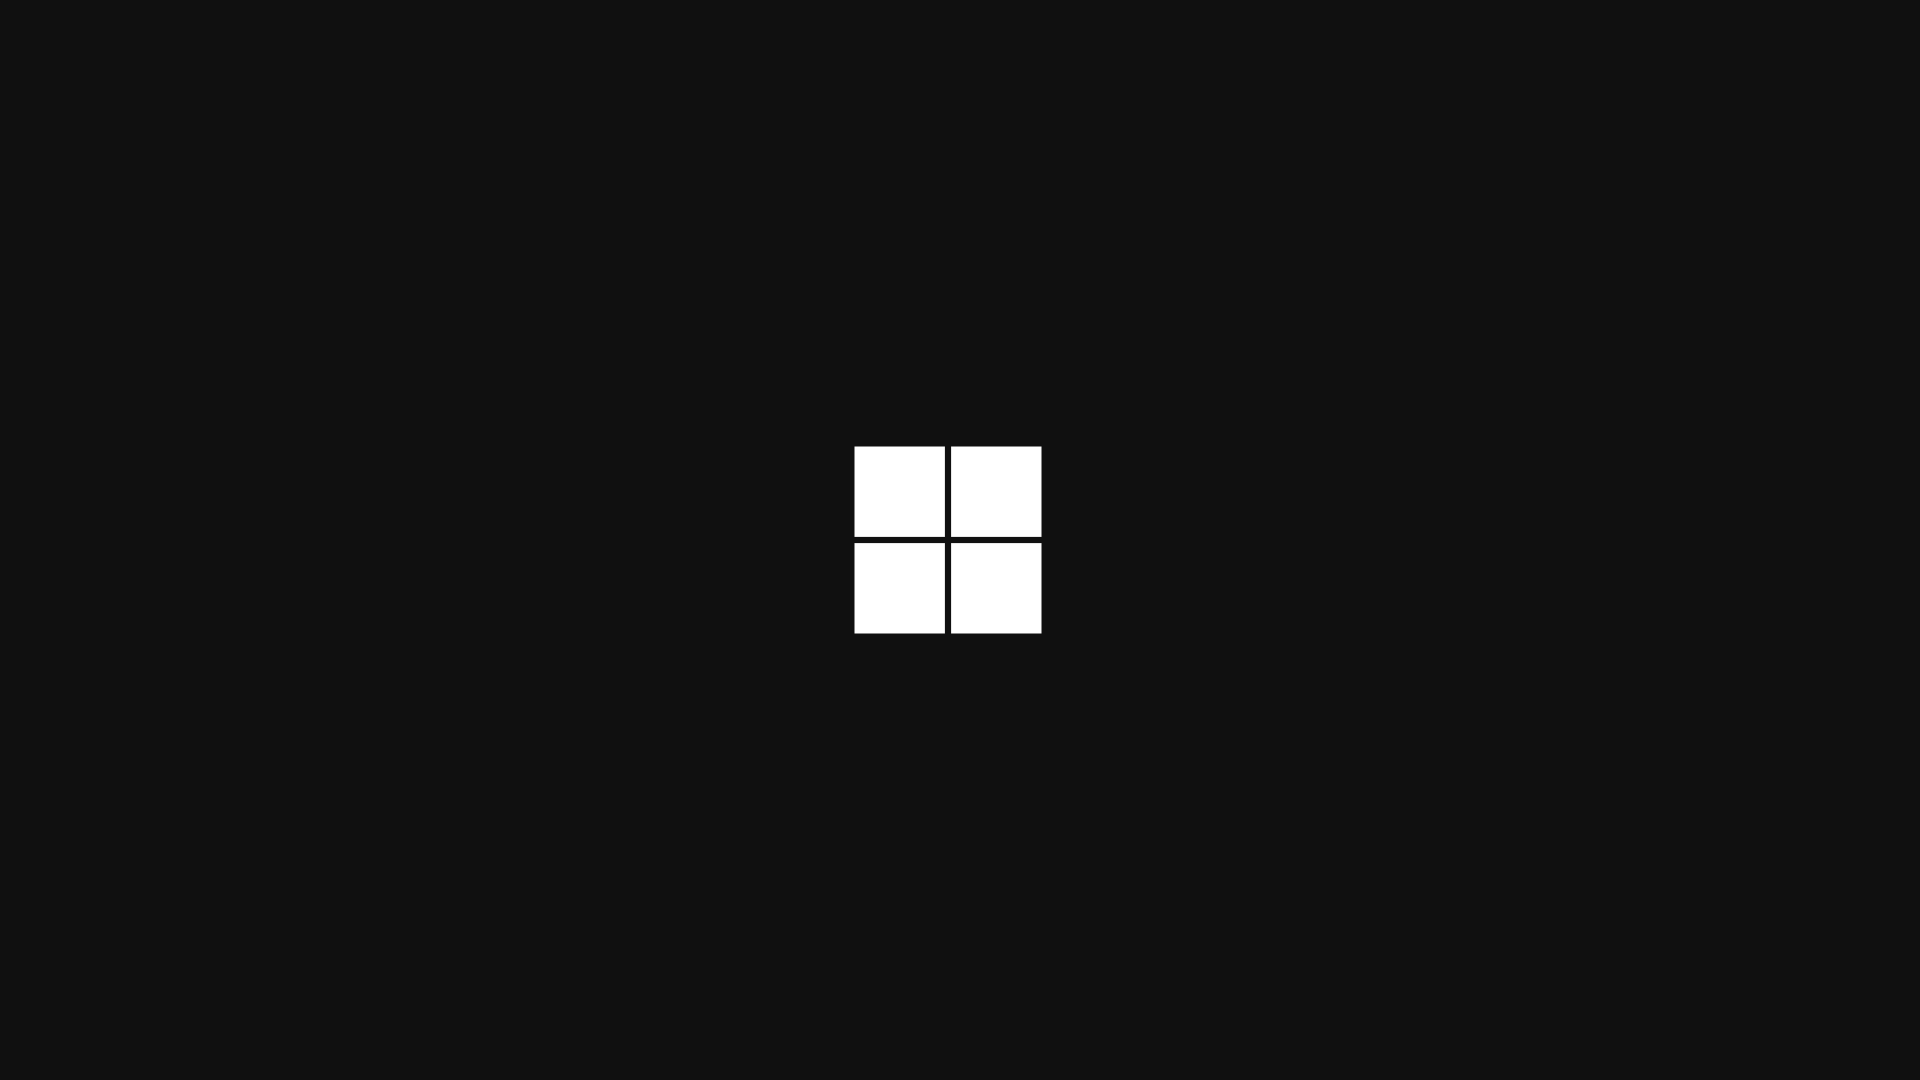 Hình nền Windows 11 đen - Khám phá nền tảng mới của Windows 11 với hình nền đen đẹp mắt này. Sử dụng nó trên máy tính của bạn để tạo ra một trải nghiệm tuyệt vời và đặc biệt hơn.